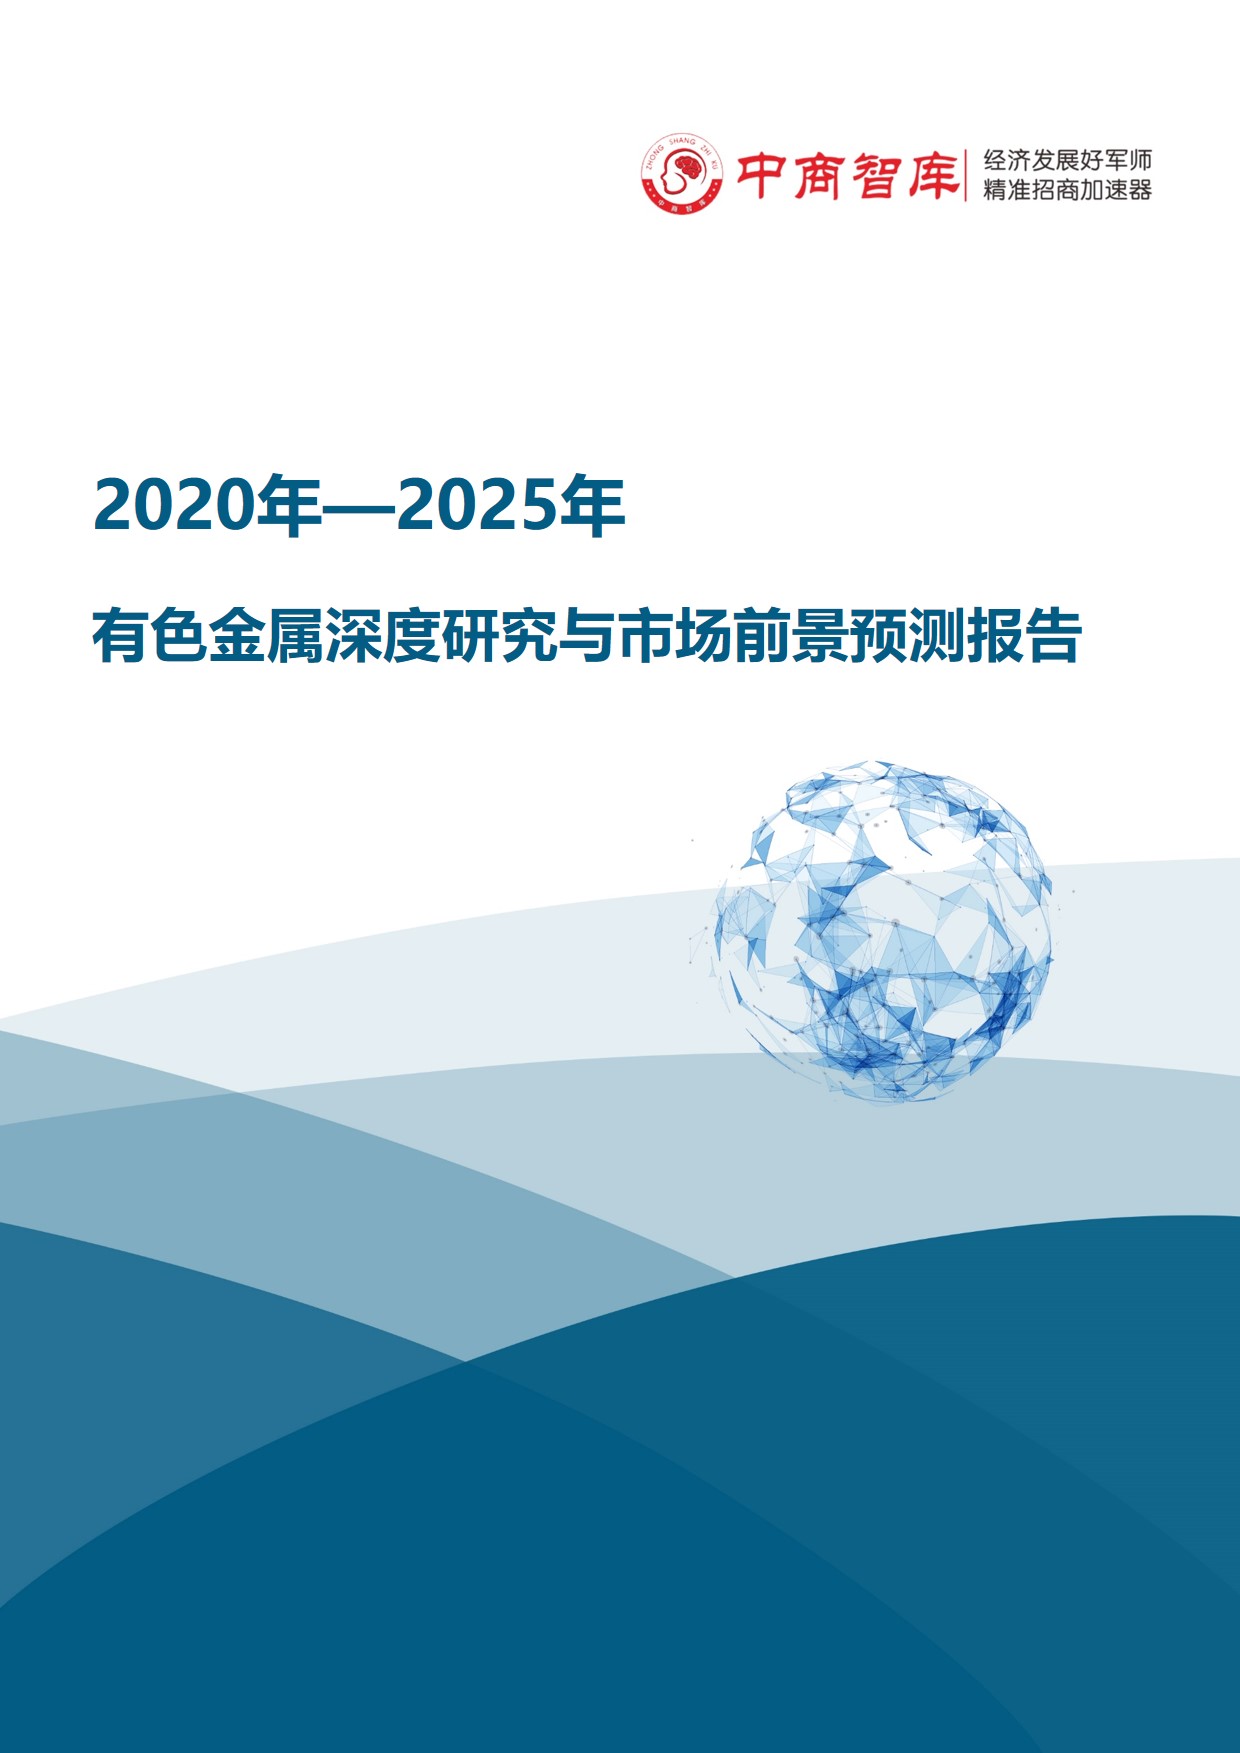 《2020-2025年有色金属行业深度研究与市场前景预测报告》